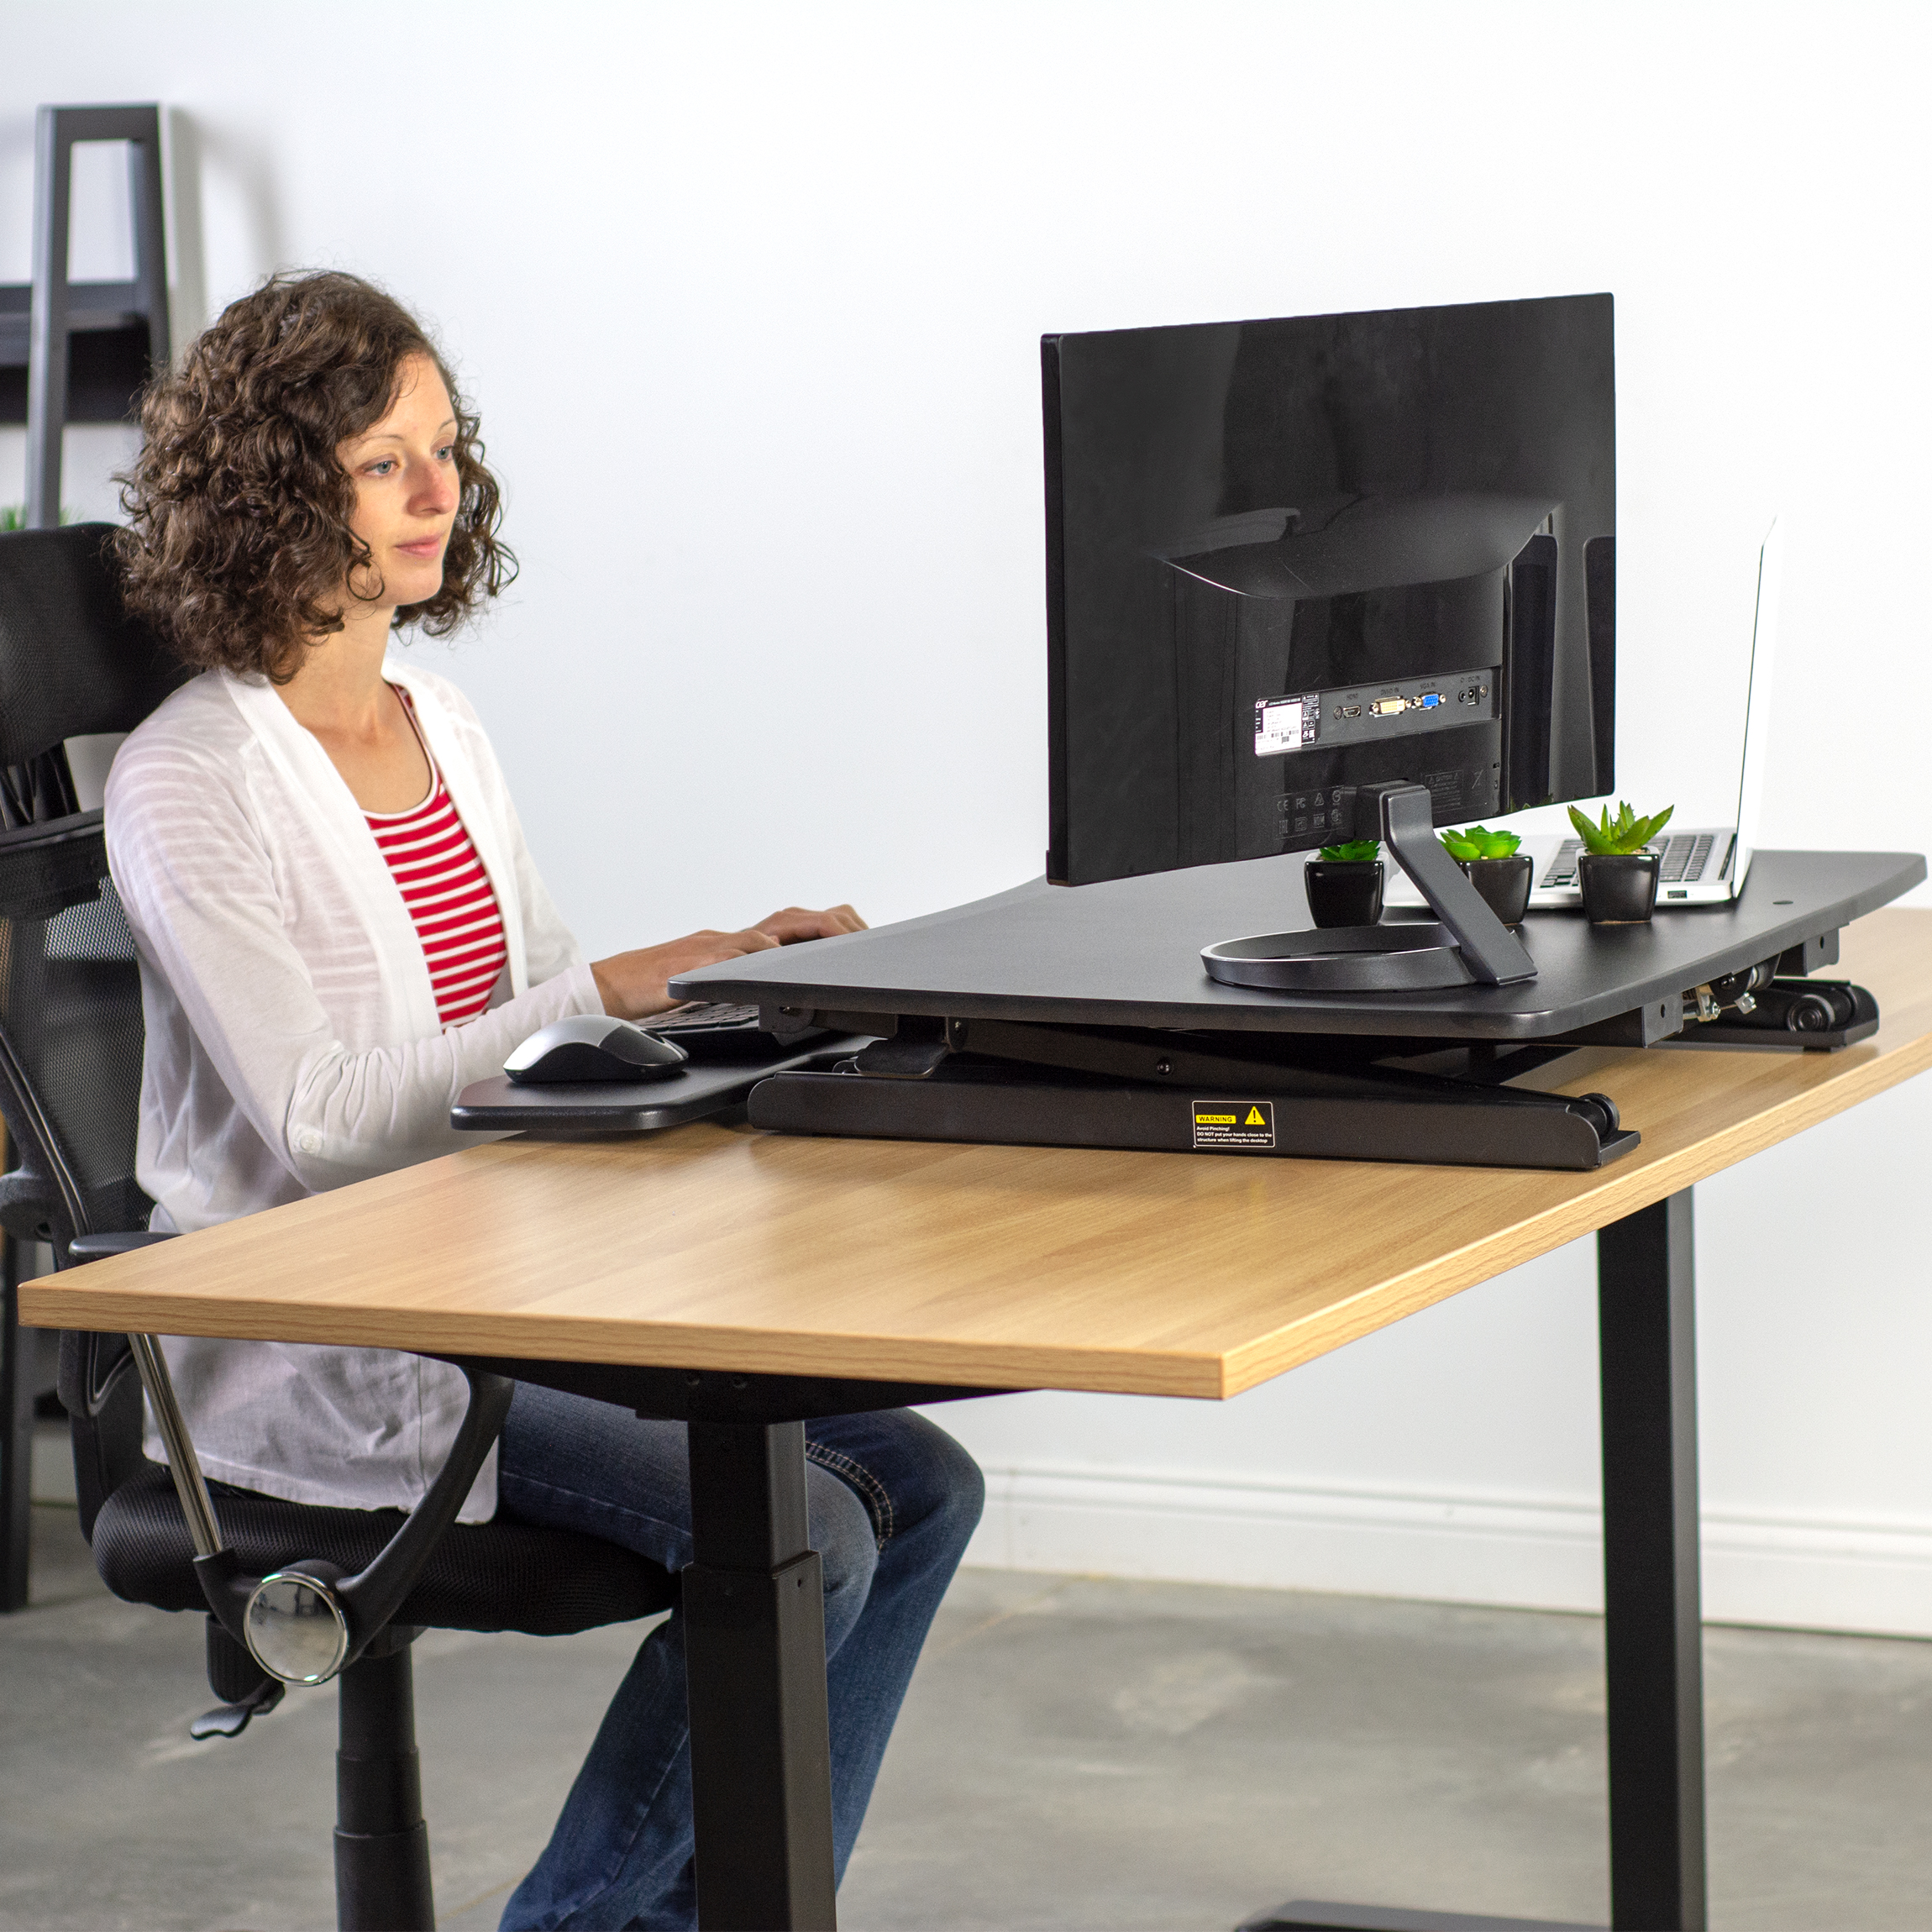 tabletop adjustable standing desk converter